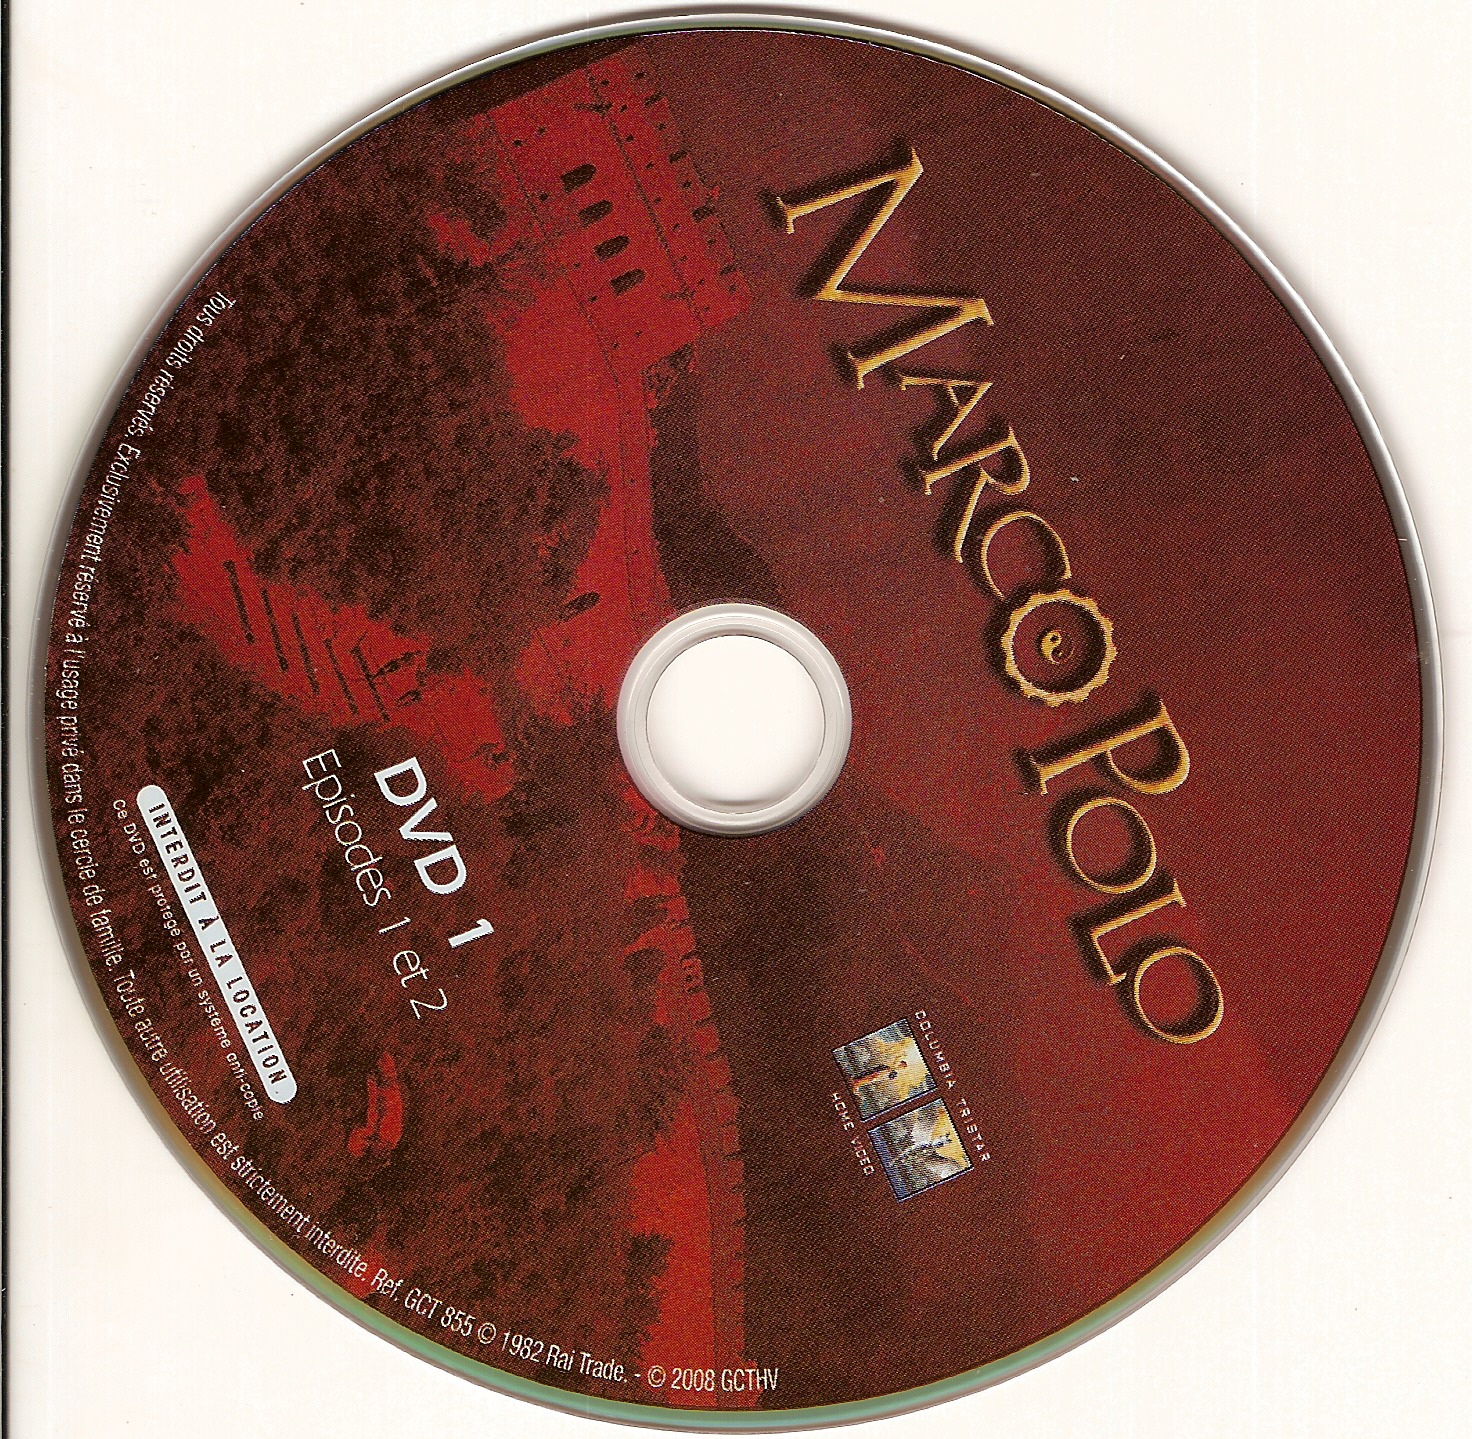 Marco Polo DISC 1